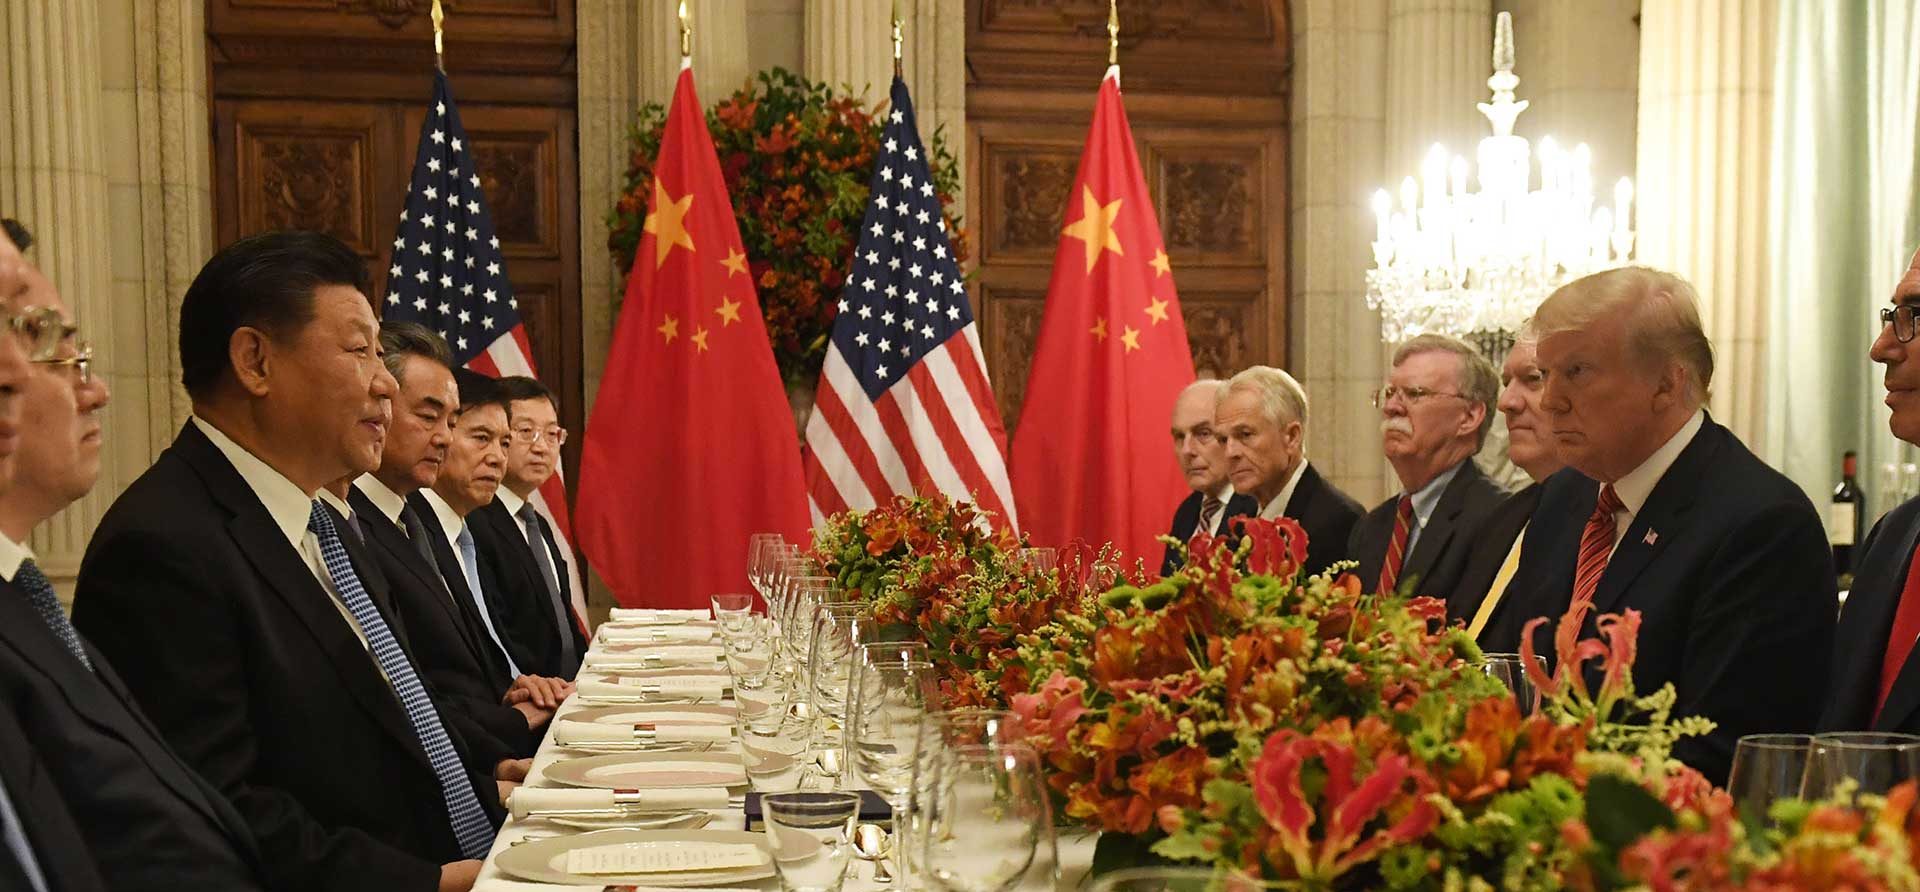 Le président chinois Xi Jinping et son homologue américain Donald Trump ont conclu une trêve dans leur guerre commerciale lors du dîner de Buenos Aires, le 1er décembre 2018, en marge de du sommet du G20. (Source : CGTN)